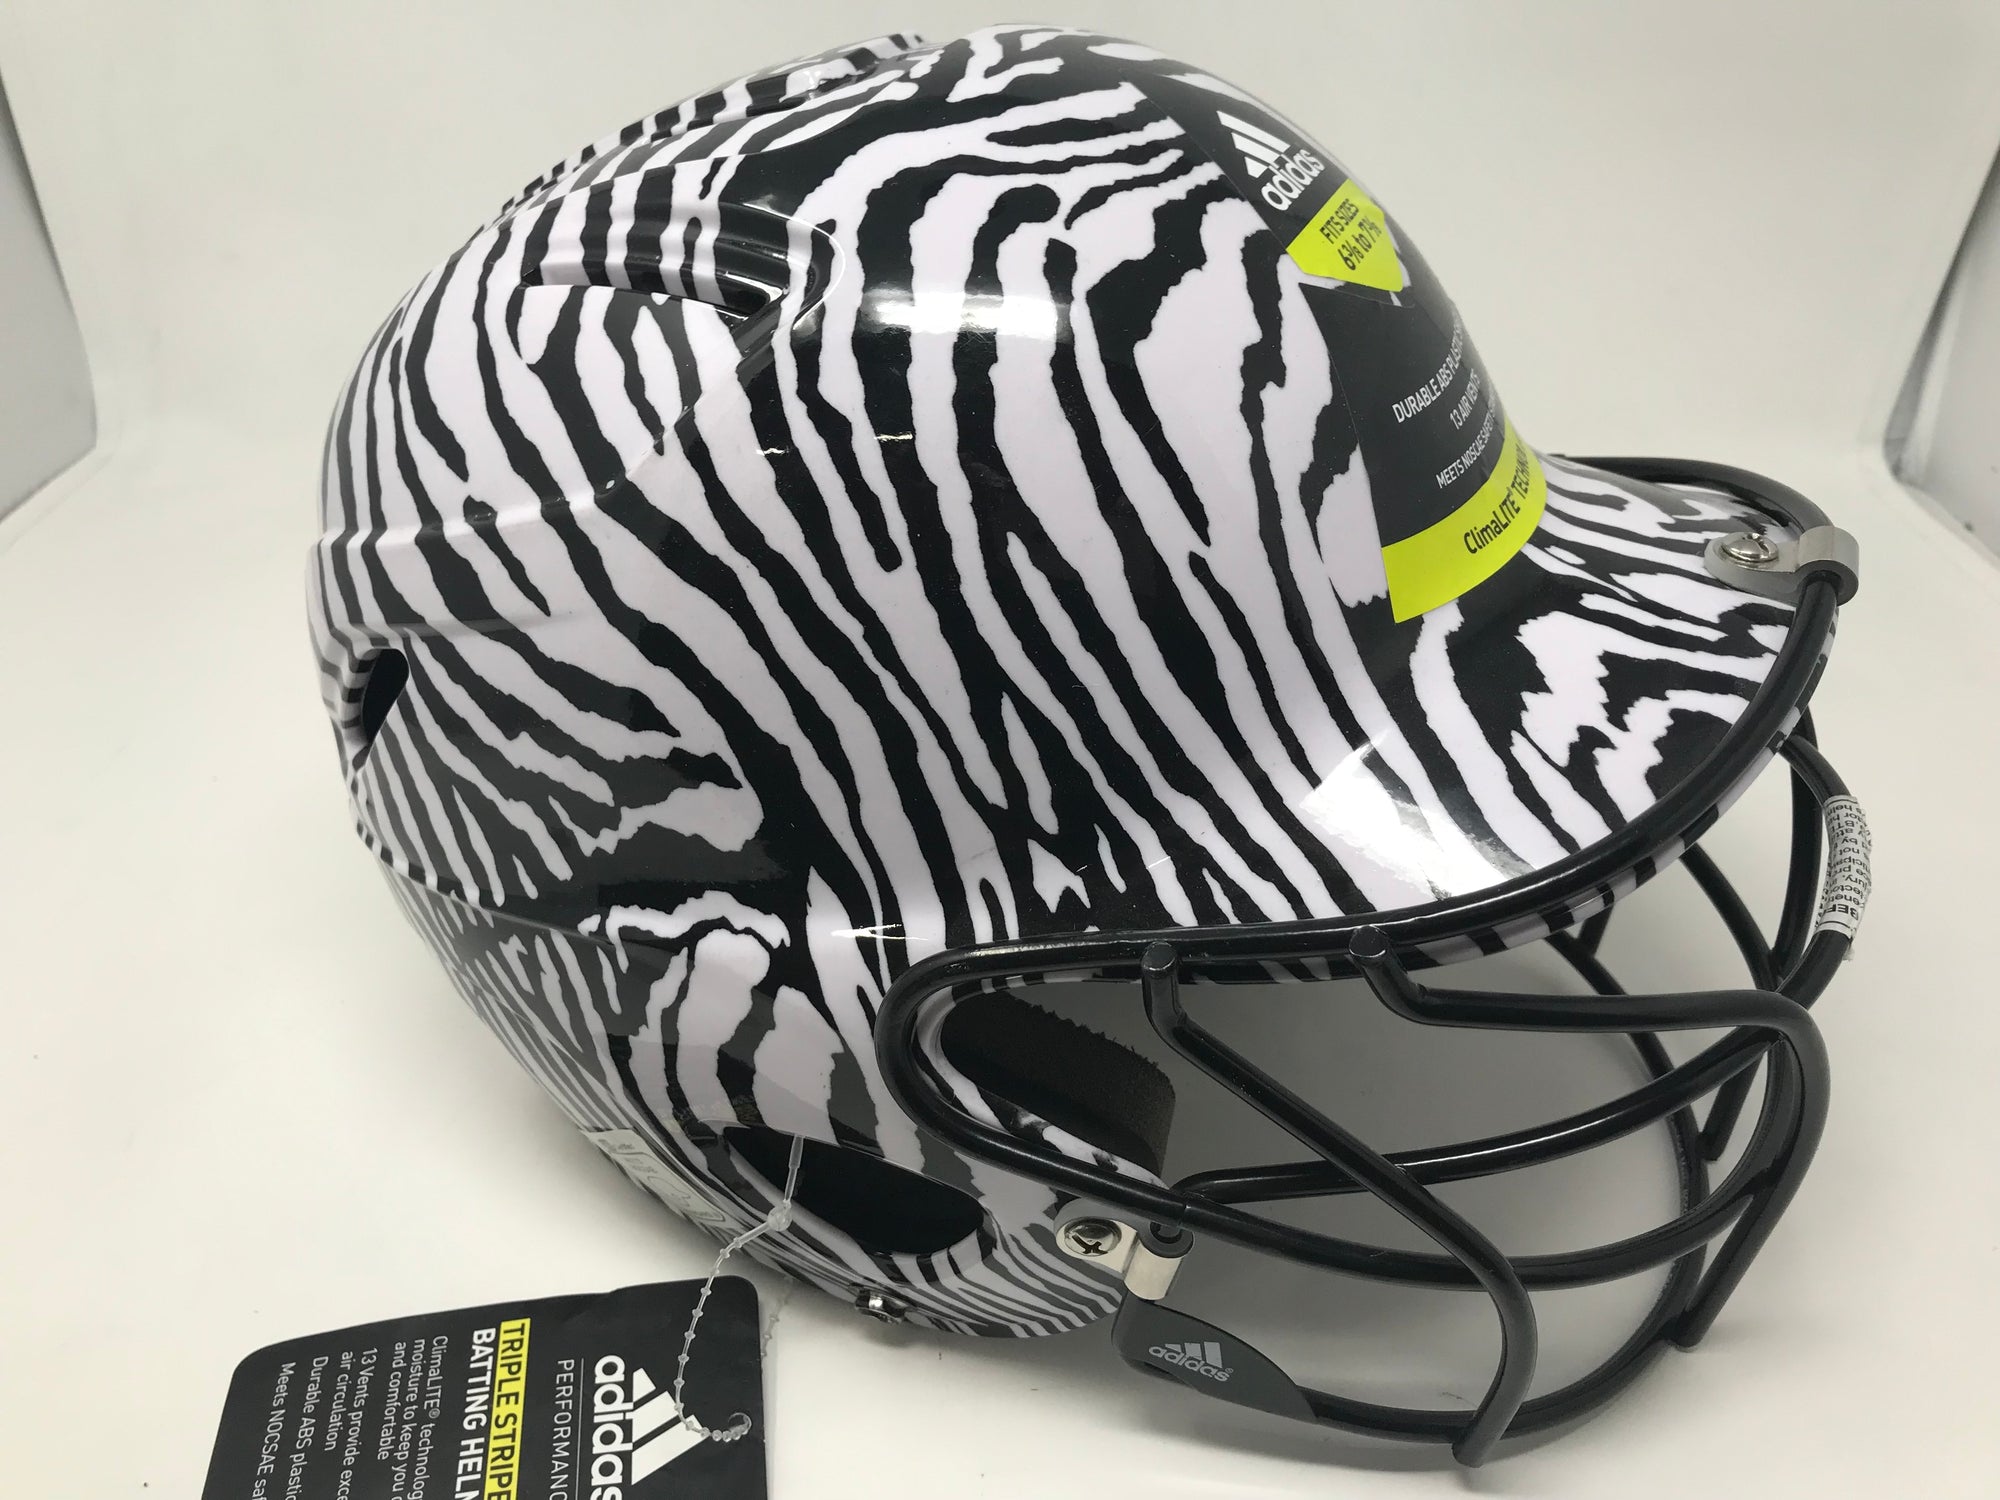 adidas triple stripe helmet